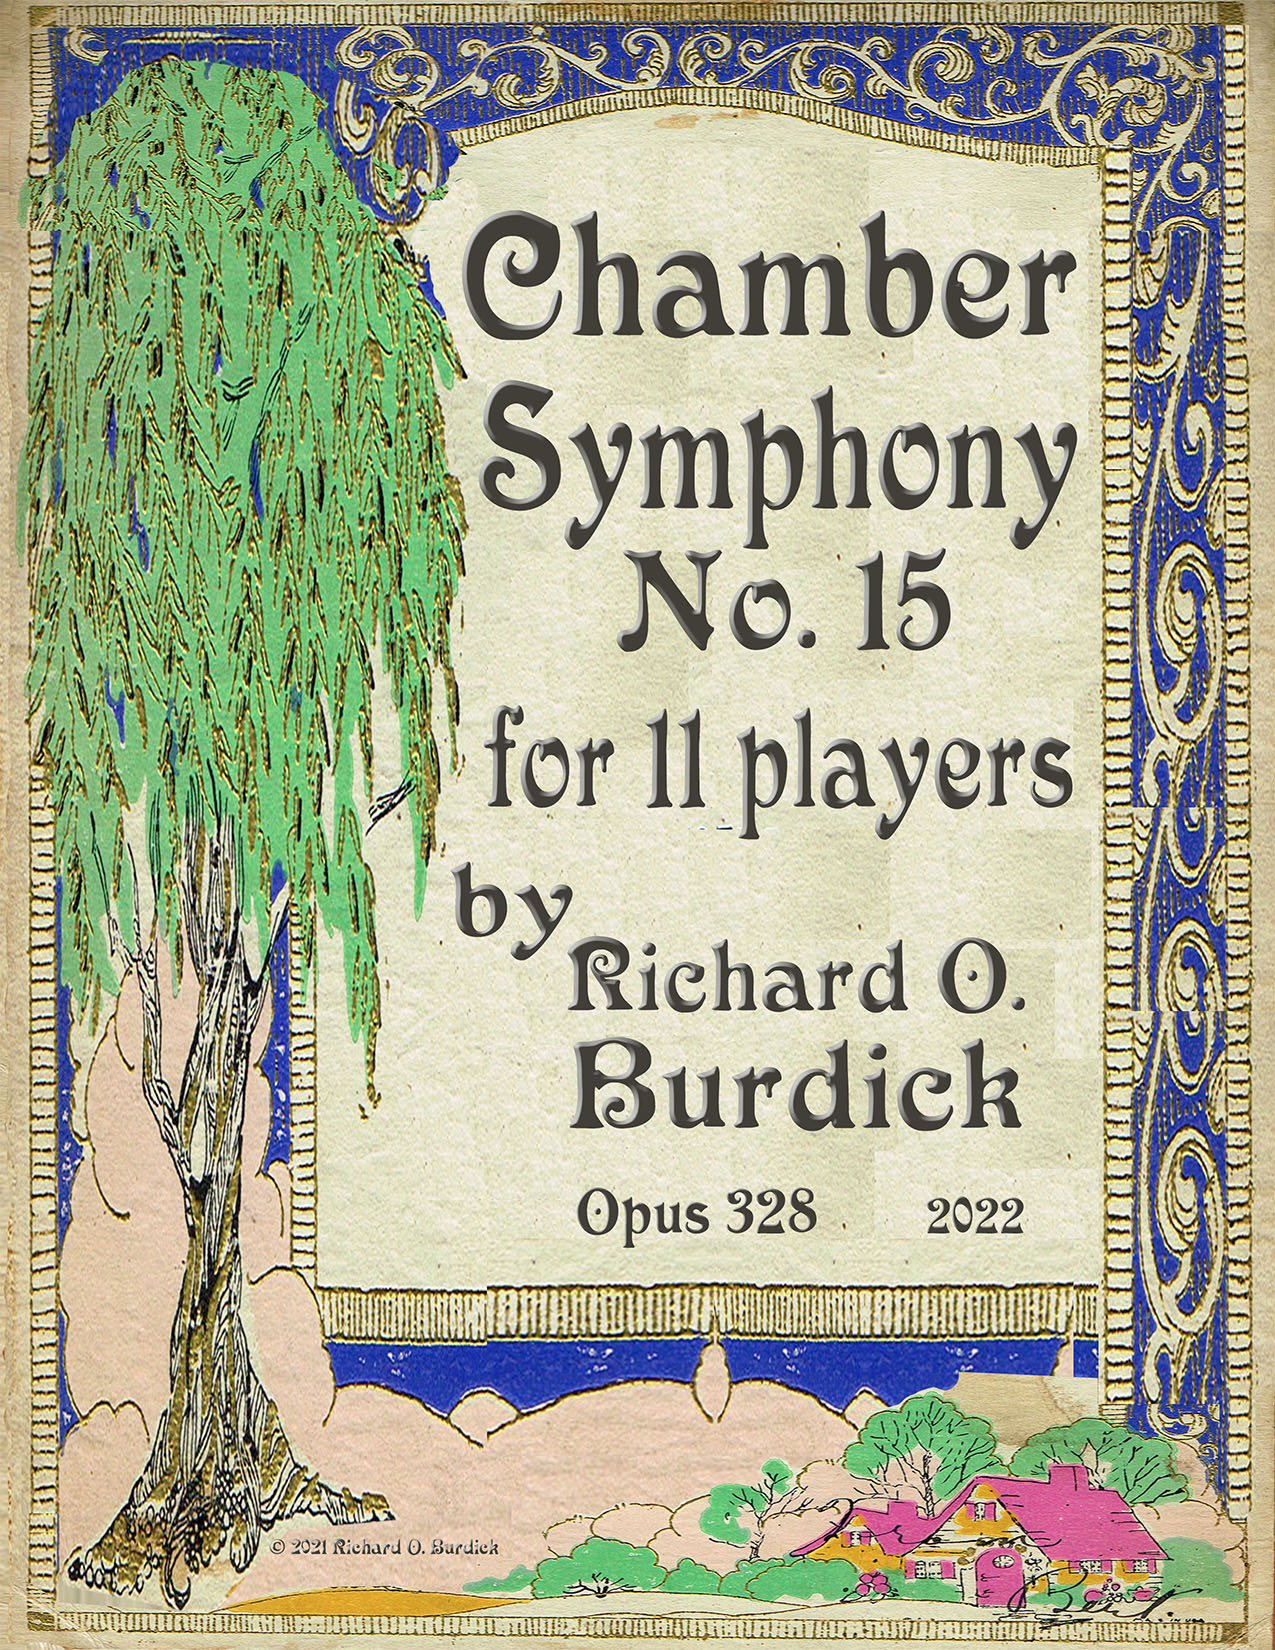 Burdick's Op. 328 Cover